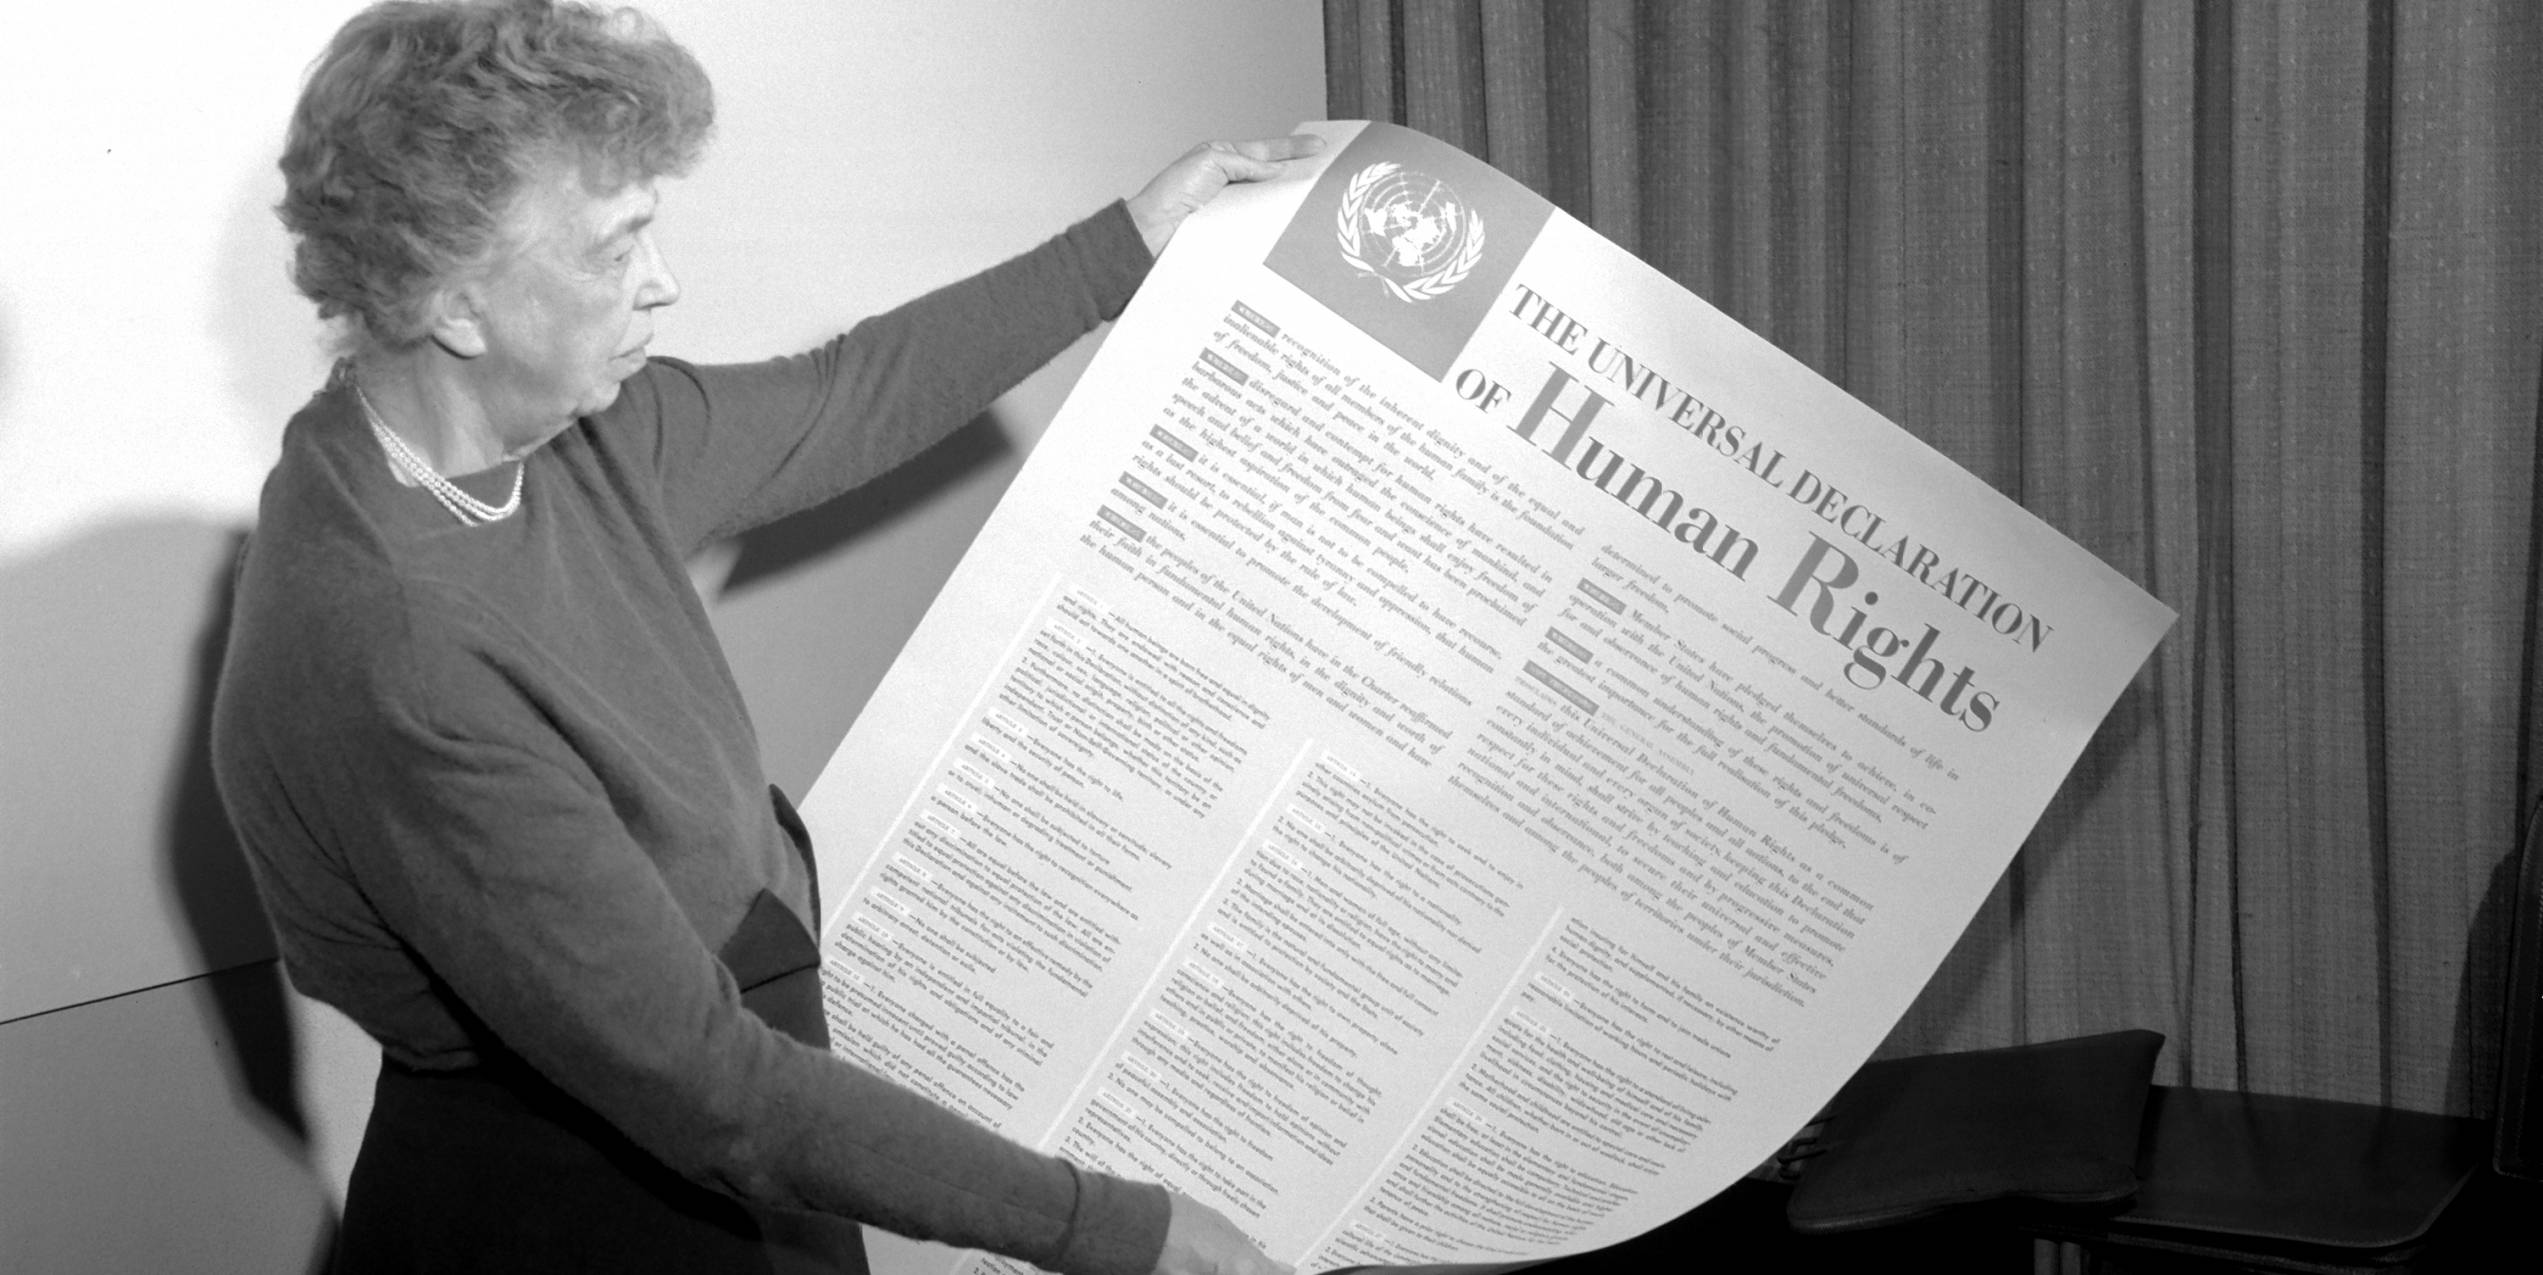 Verdenserklæringen om menneskerettigheter